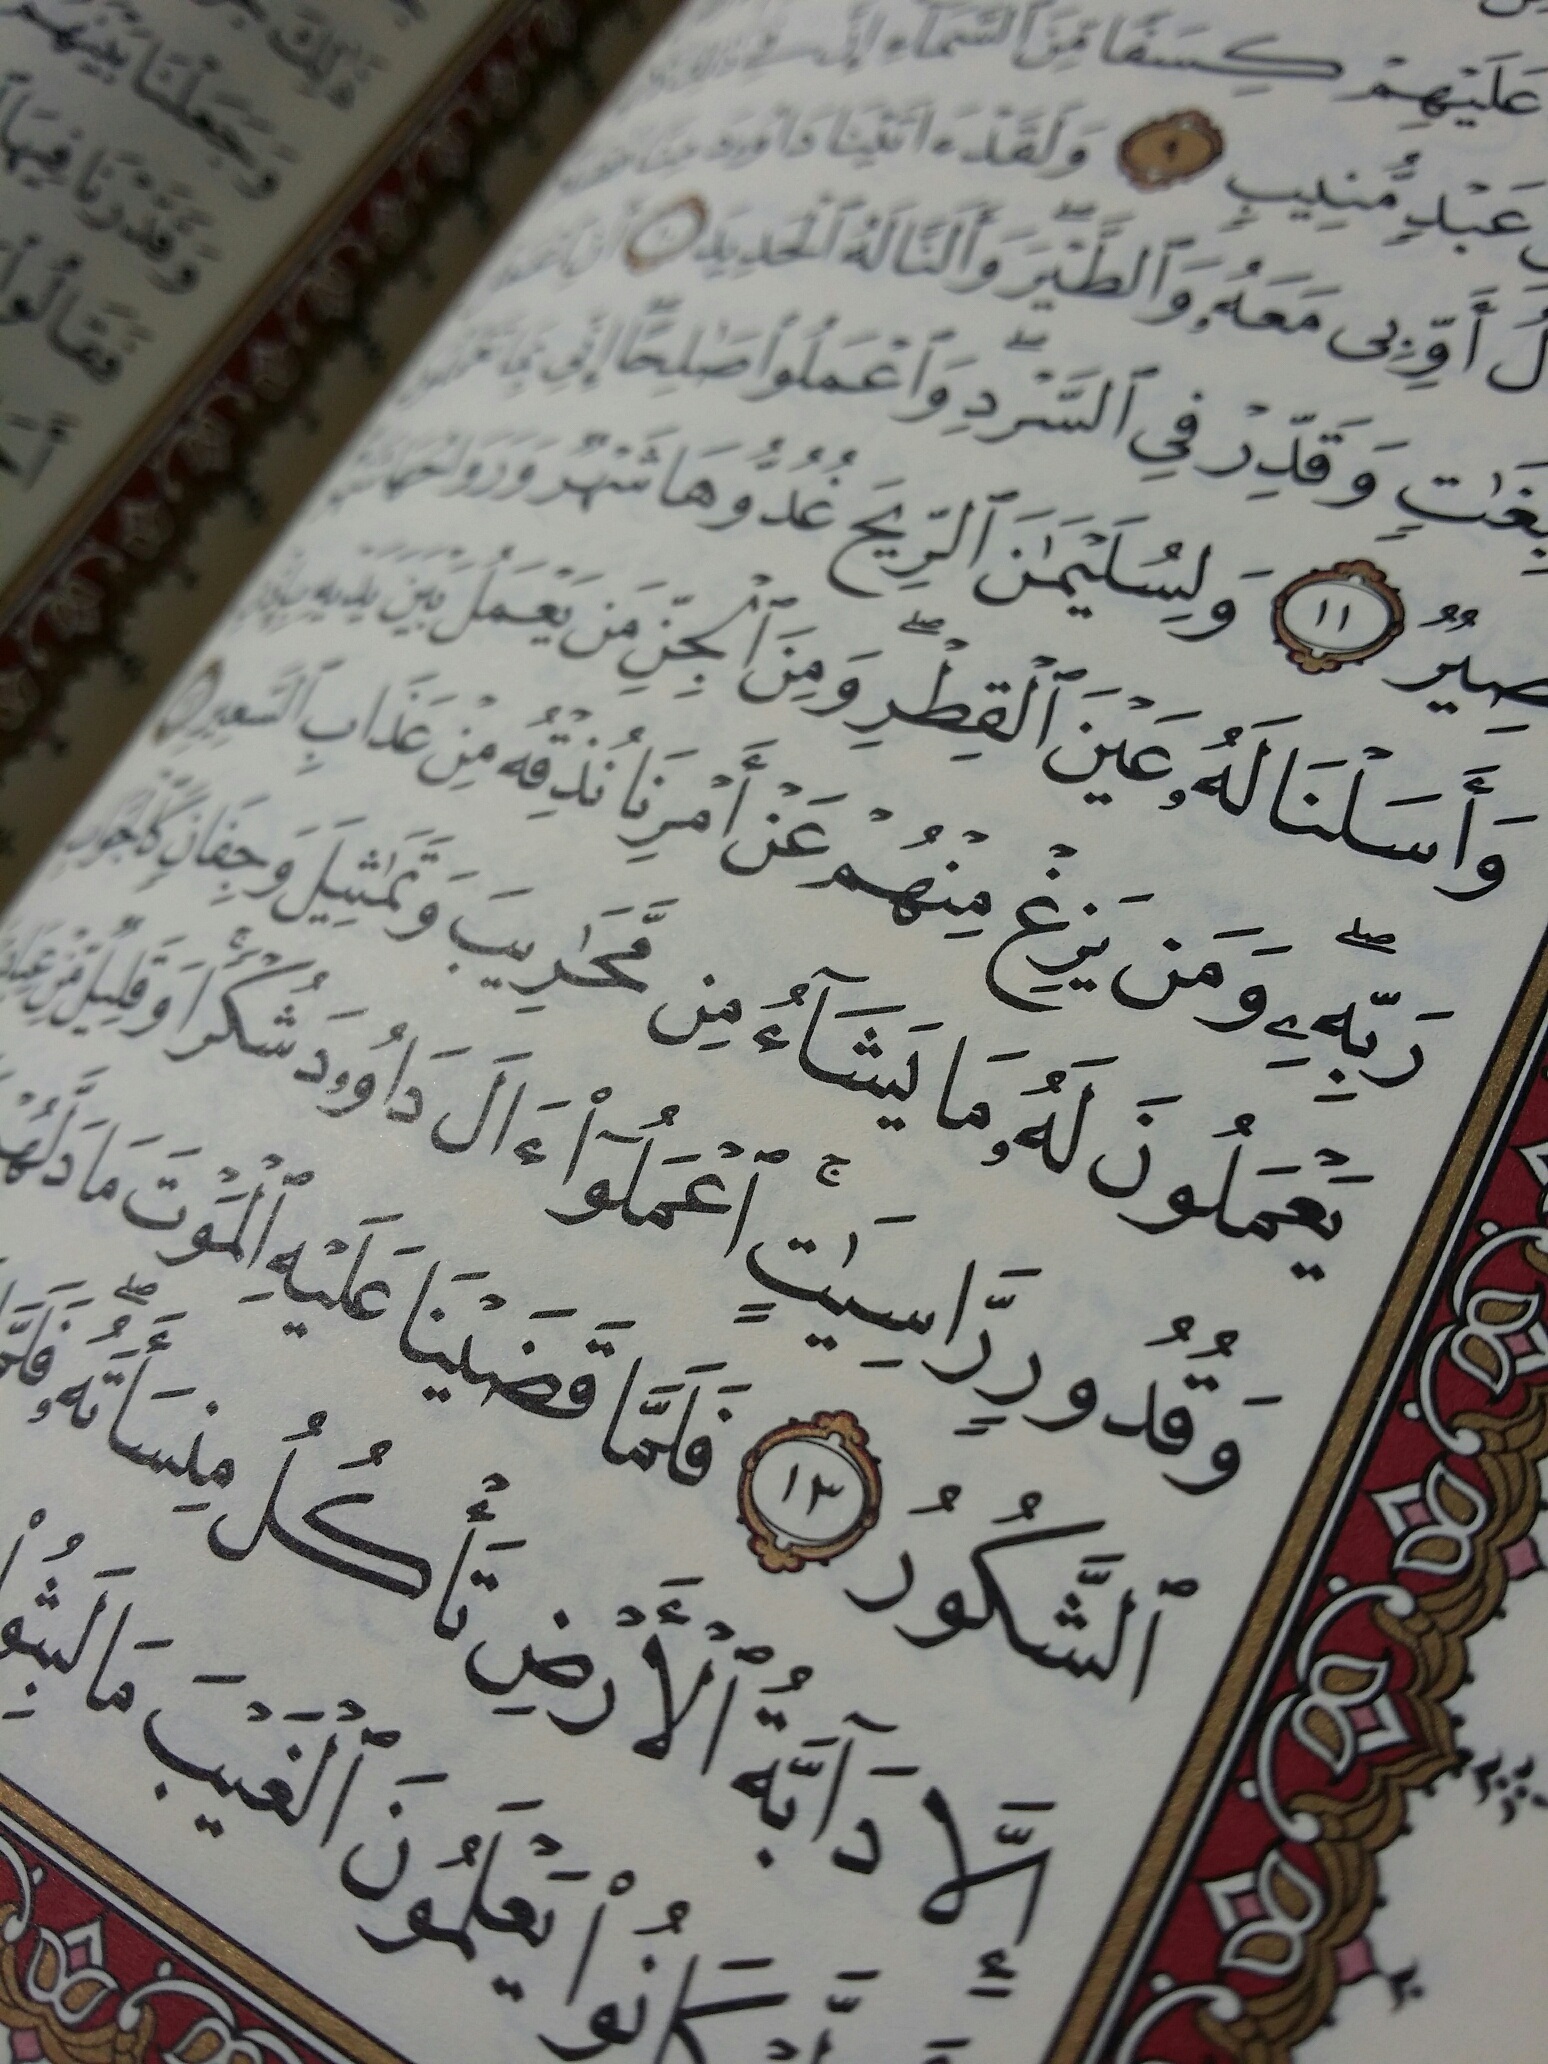 Parmi les mrites de la glorification dAllah mentionns dans le Coran   